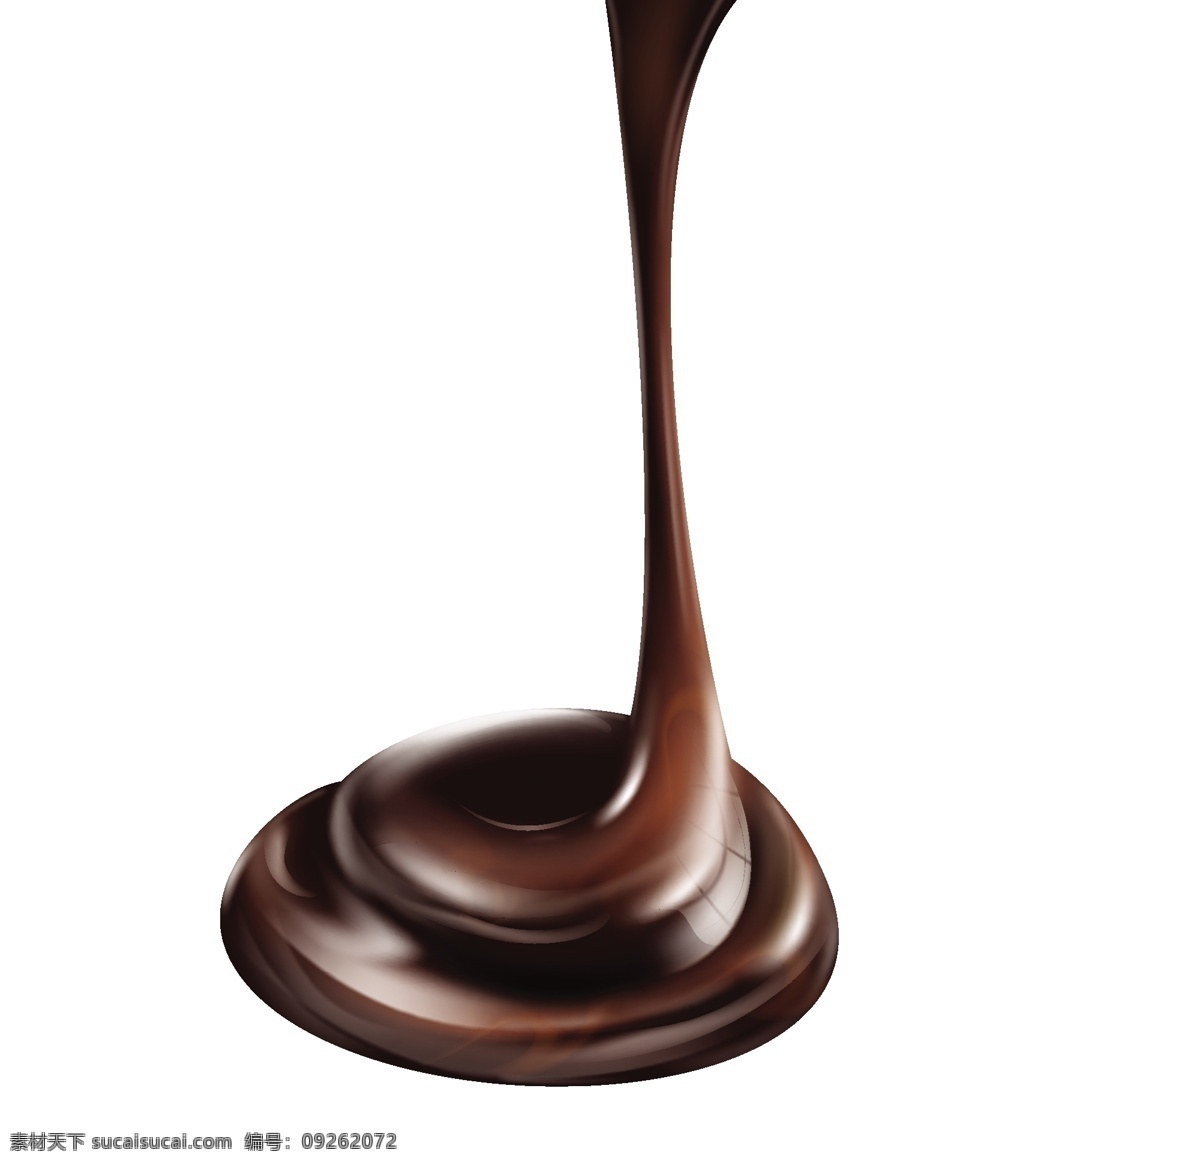 巧克力 背景图片 丝滑质感 巧克力背景 丝滑背景 顺滑巧克力 咖啡 巧克力豆